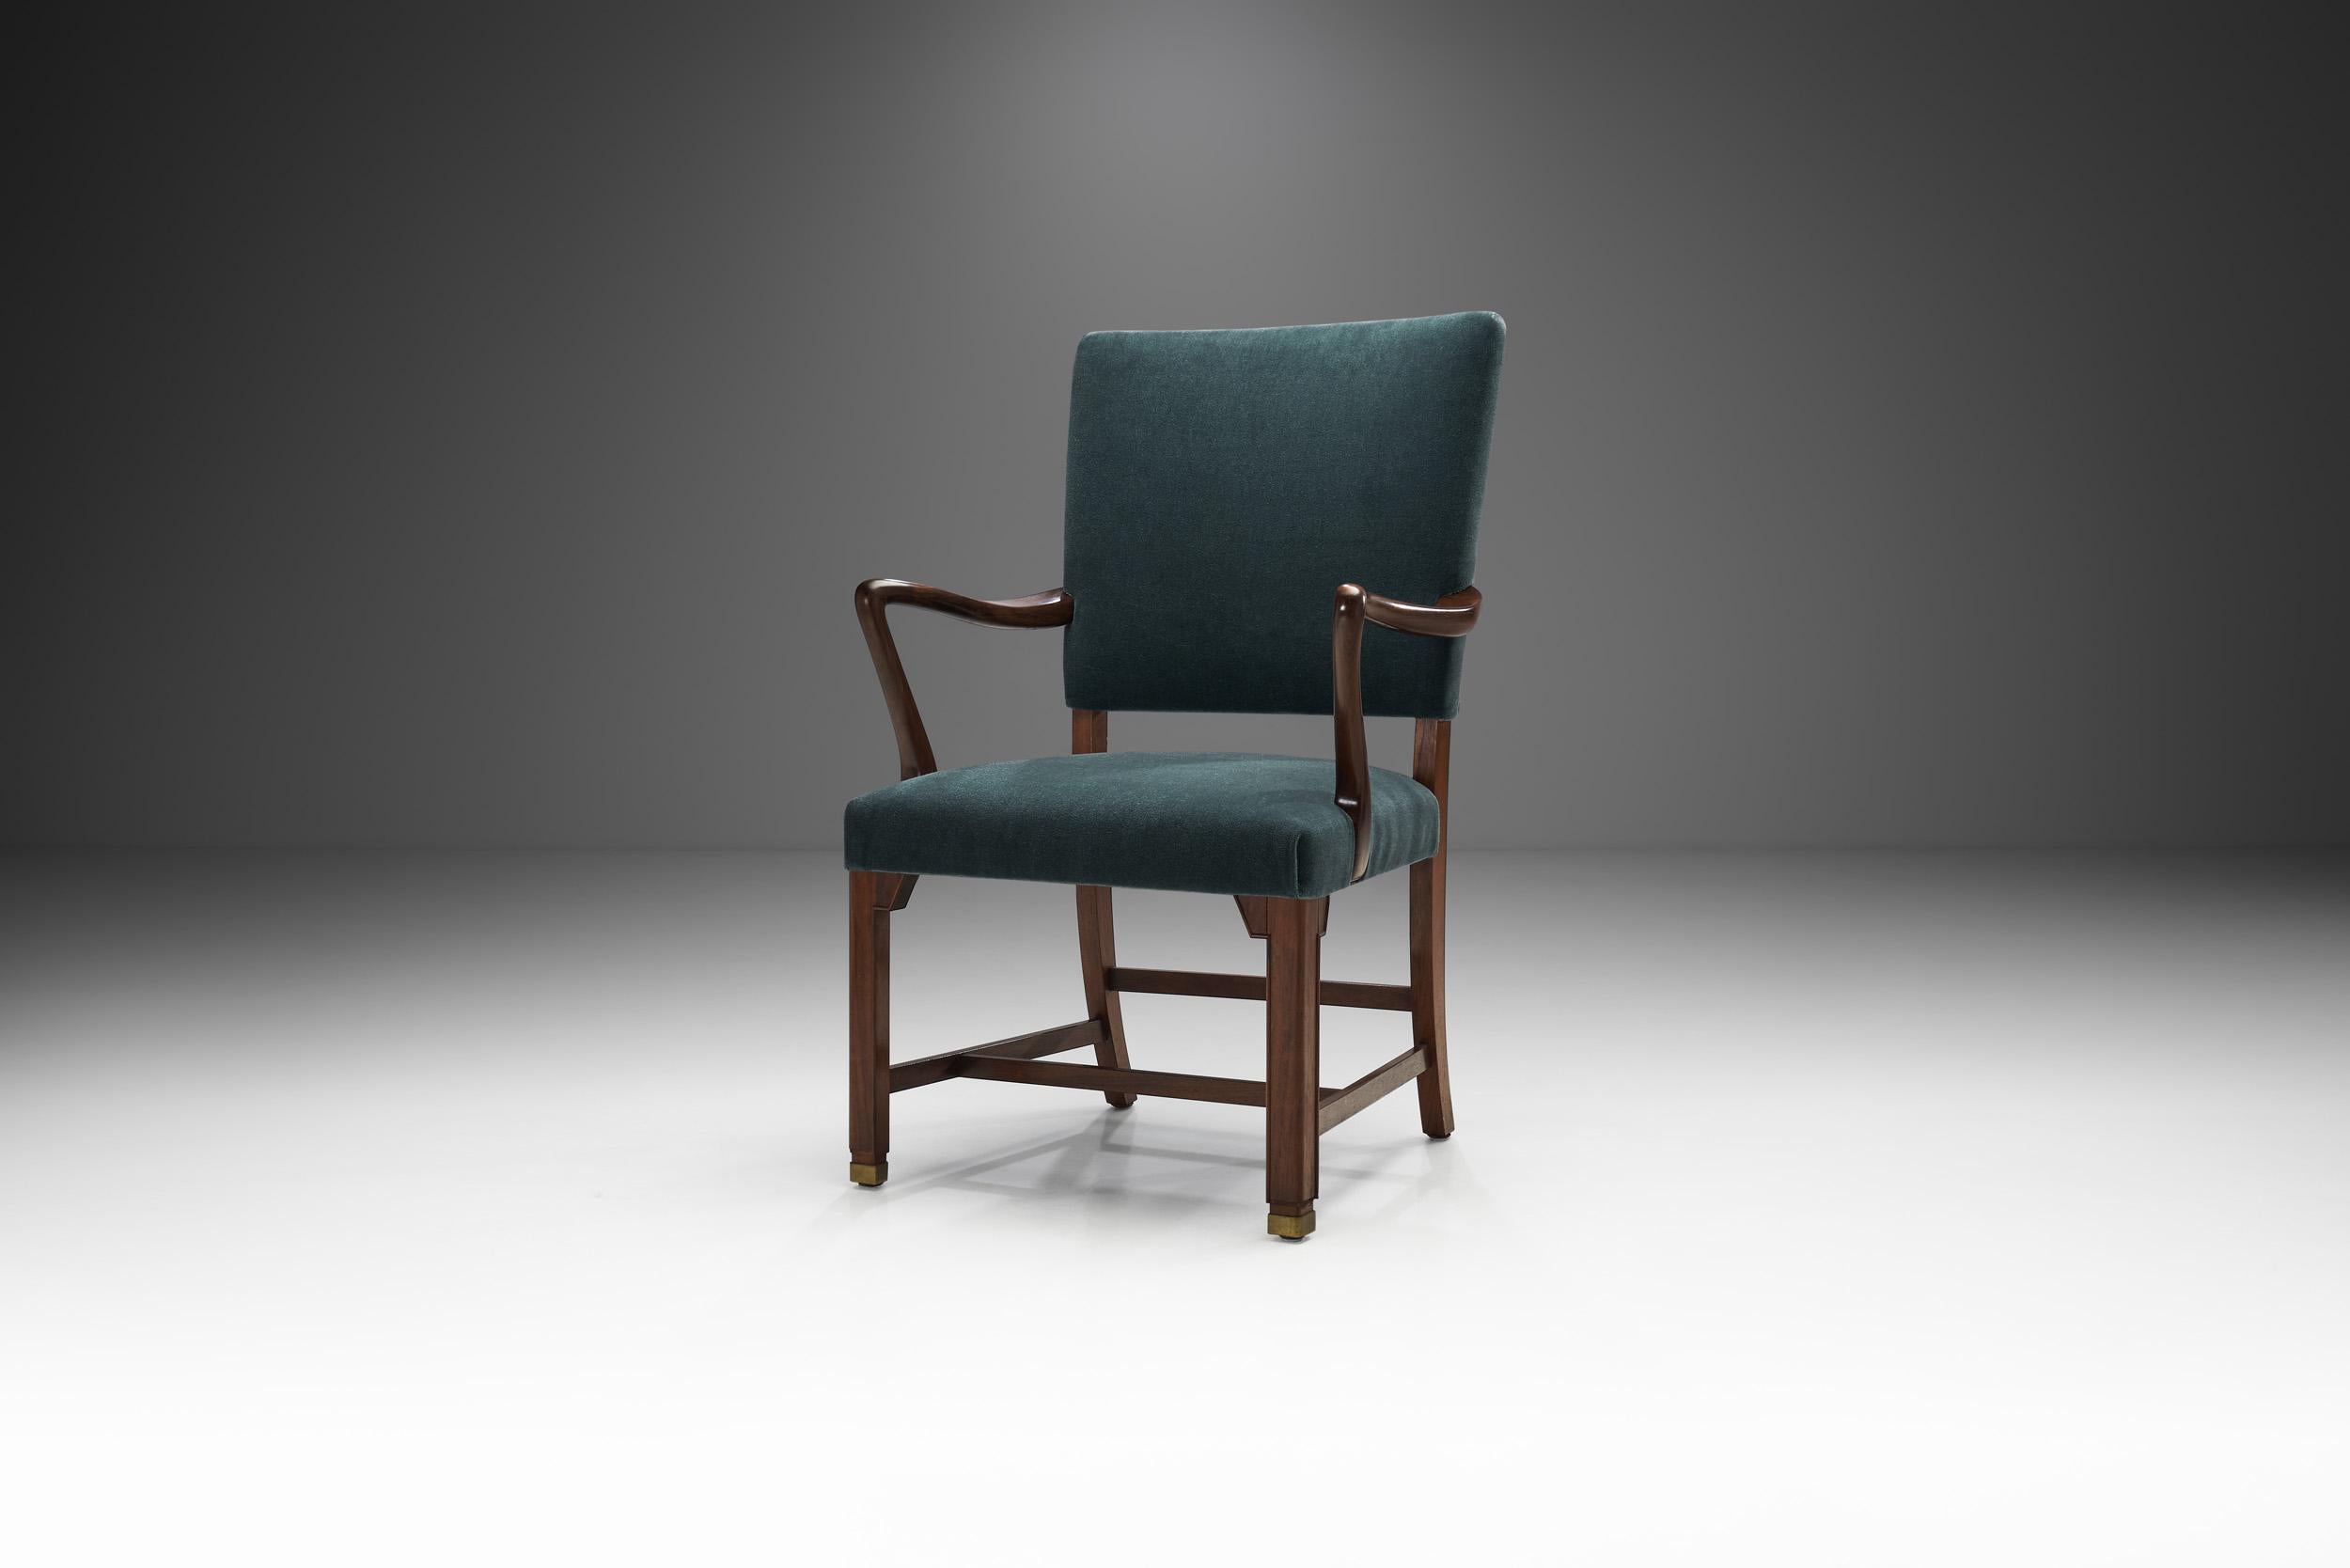 Dieser einzigartige Sessel verkörpert die Qualität und Handwerkskunst der dänischen Tischlermeister und die sofort erkennbaren Merkmale des skandinavischen Designs. Hier zeigt sich besonders die Vorliebe der dänischen Designer für geschwungene